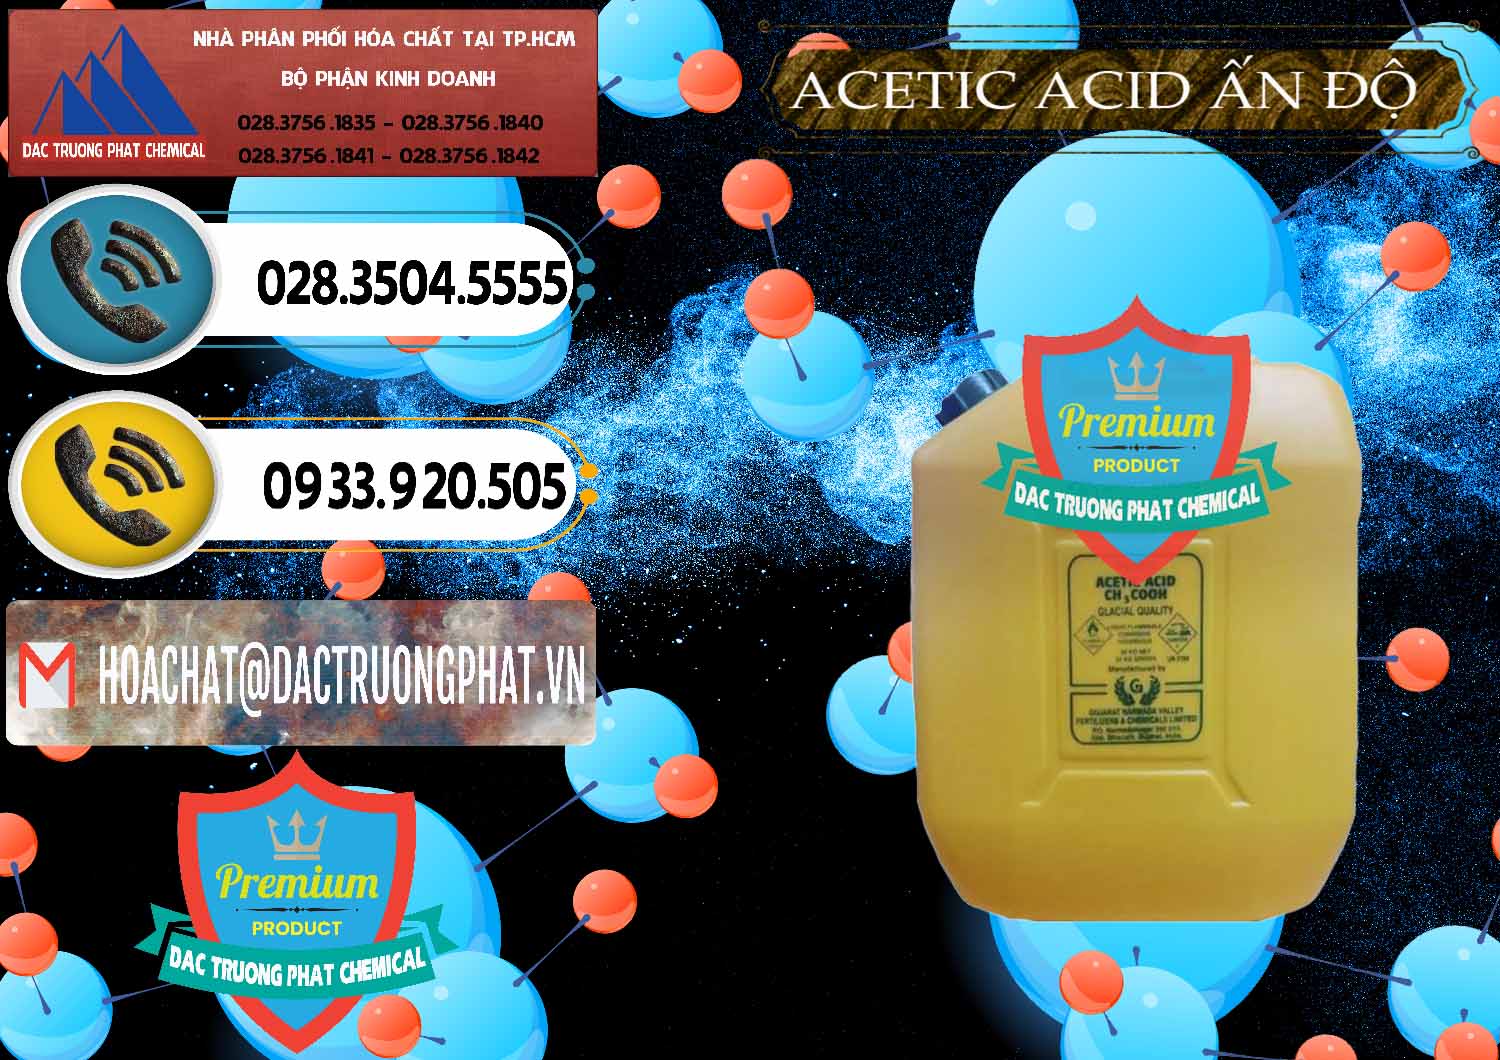 Phân phối ( bán ) Acetic Acid – Axit Acetic Ấn Độ India - 0359 - Phân phối & kinh doanh hóa chất tại TP.HCM - hoachatdetnhuom.vn